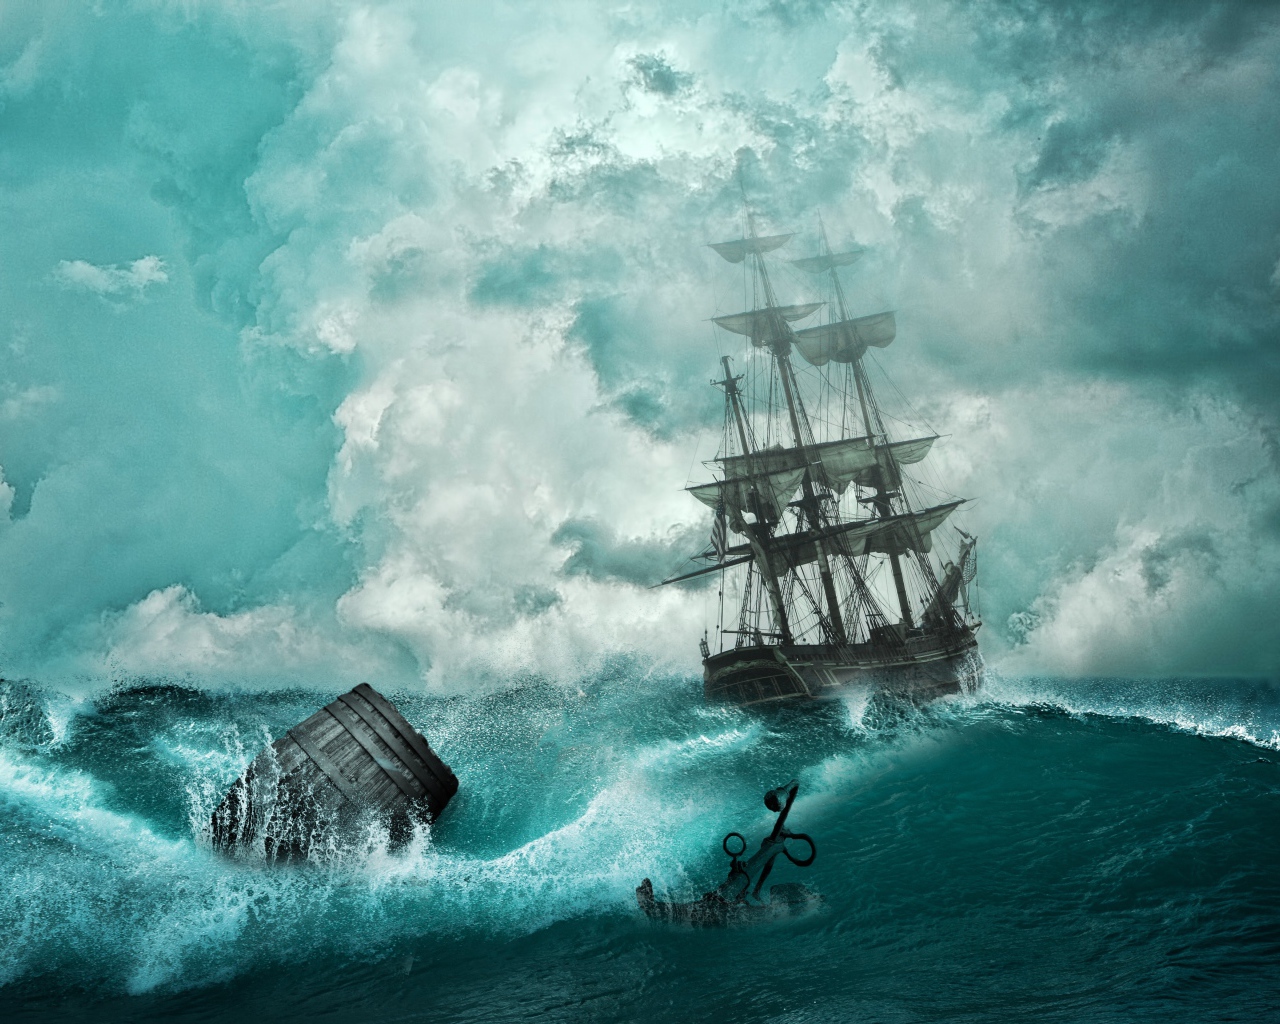 Пиратский корабль в бушующем океане во время шторма